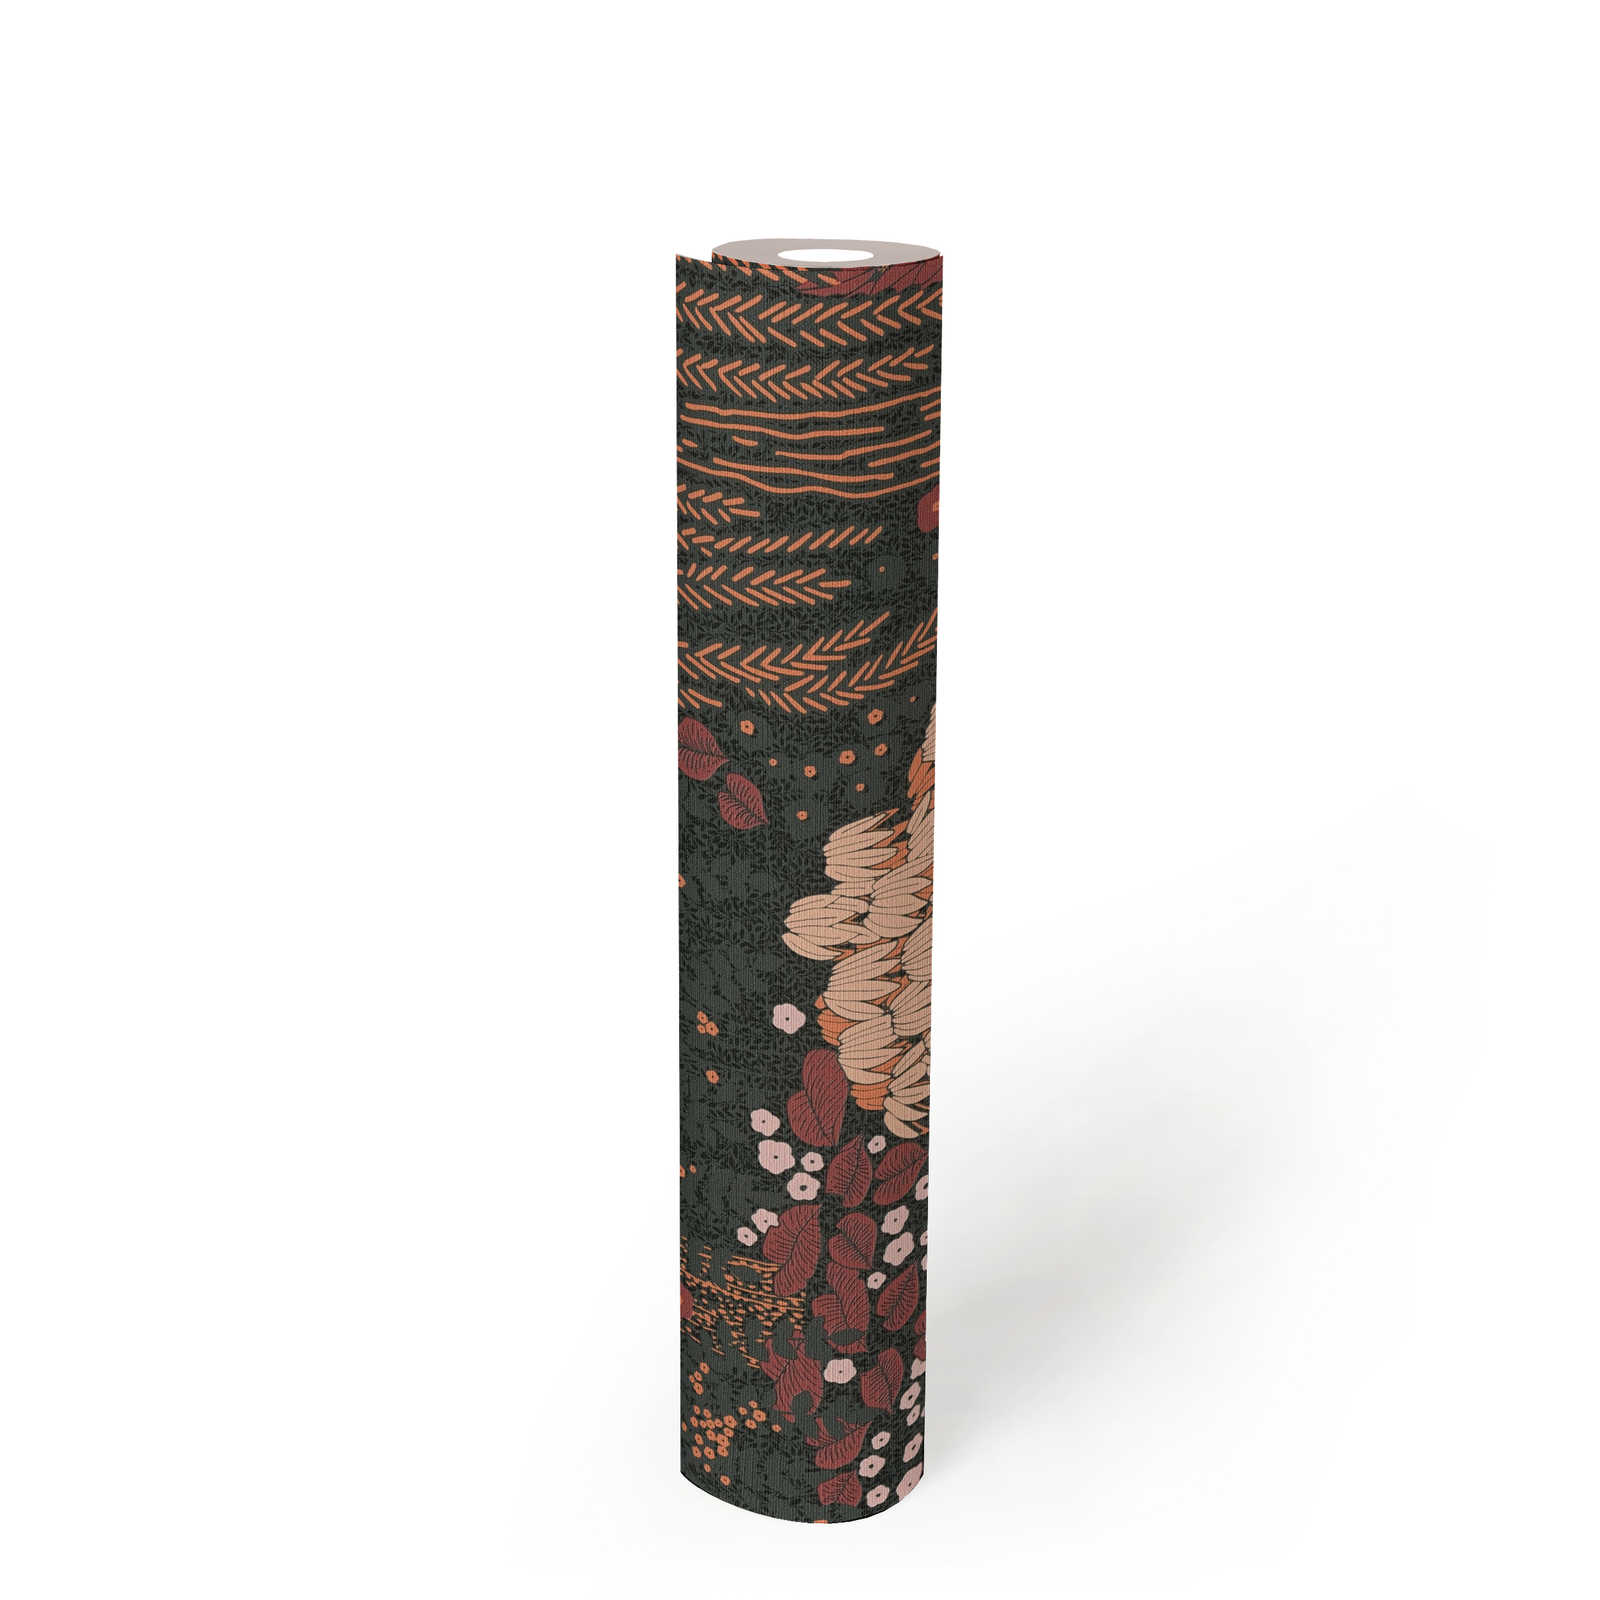             Vliesbehang bloem met bladeren licht gestructureerd, mat - zwart, rood, roze
        